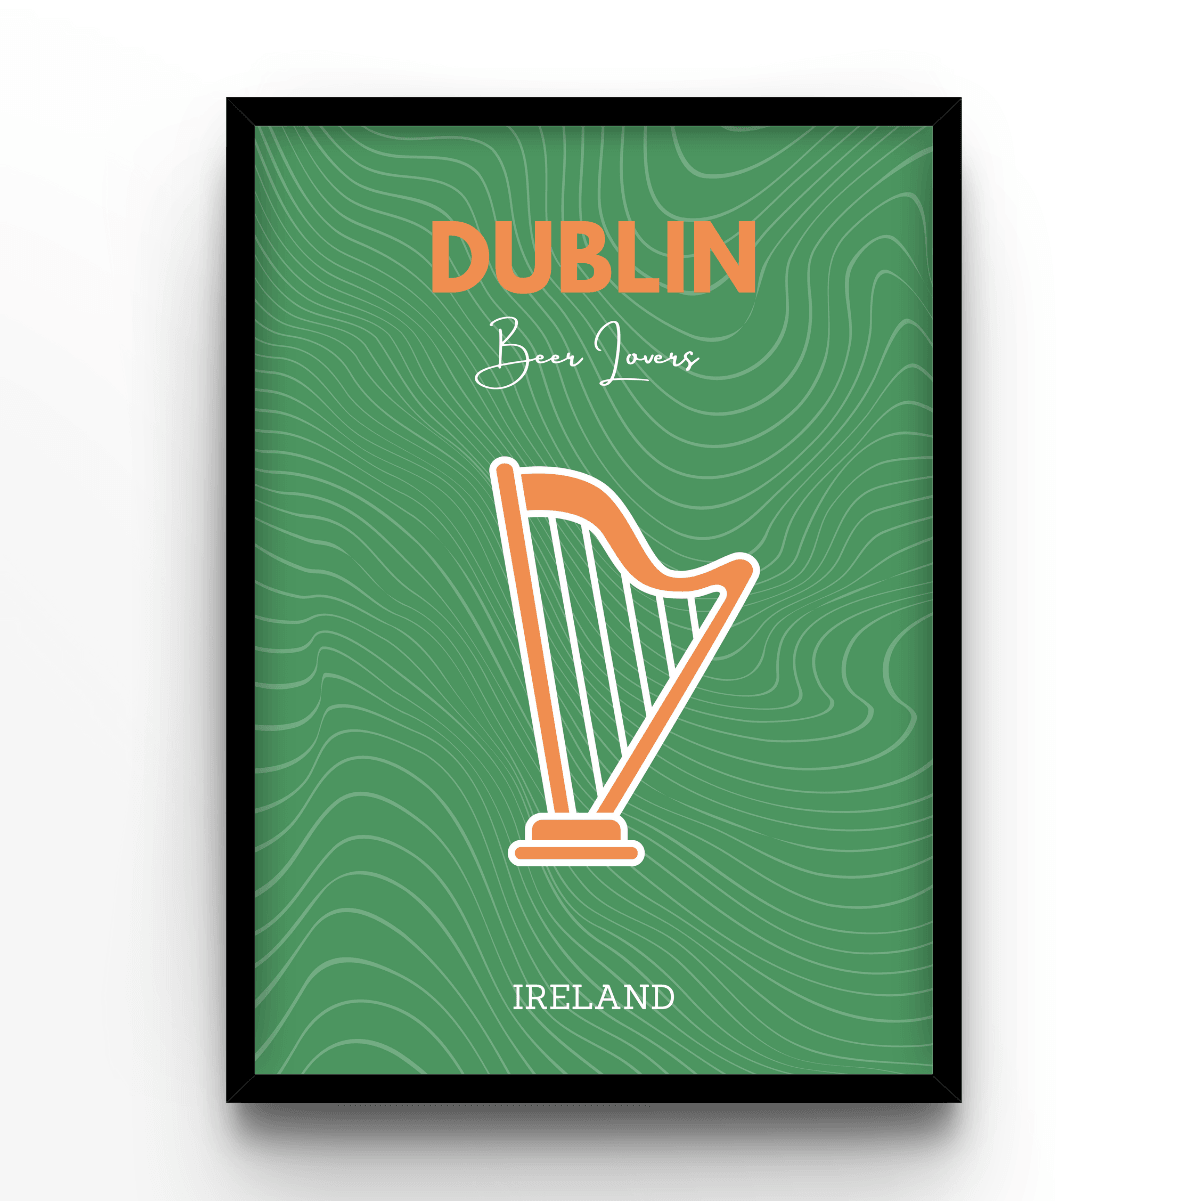 Dublin - A4, A3, A2 Posters Base - Poster Print Shop / Art Prints / PostersBase